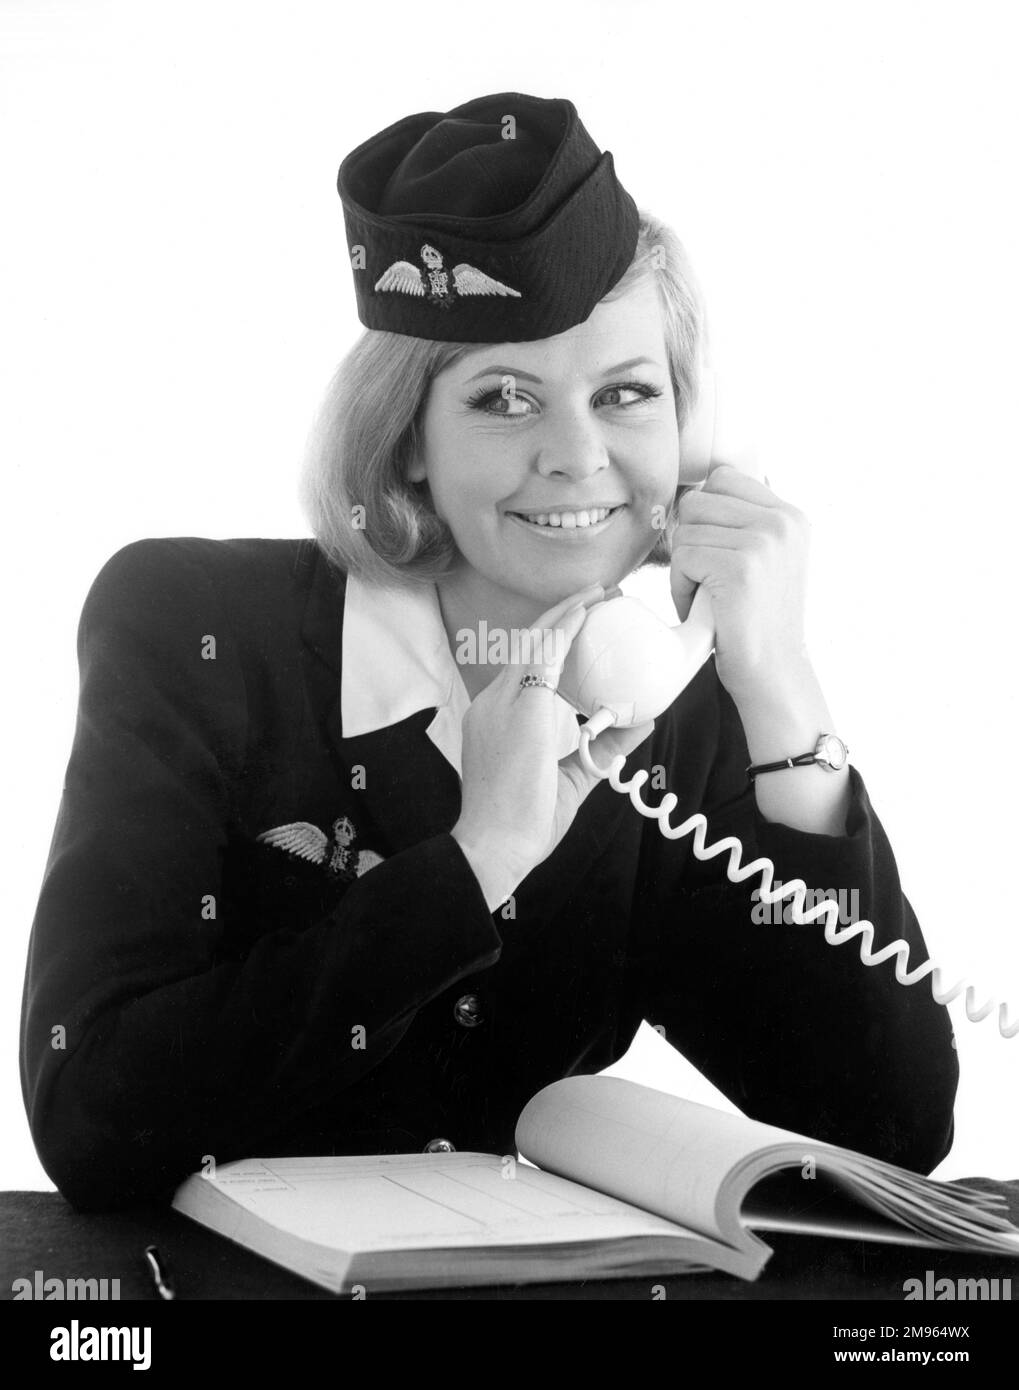 An air hostess talks on the phone. Stock Photo